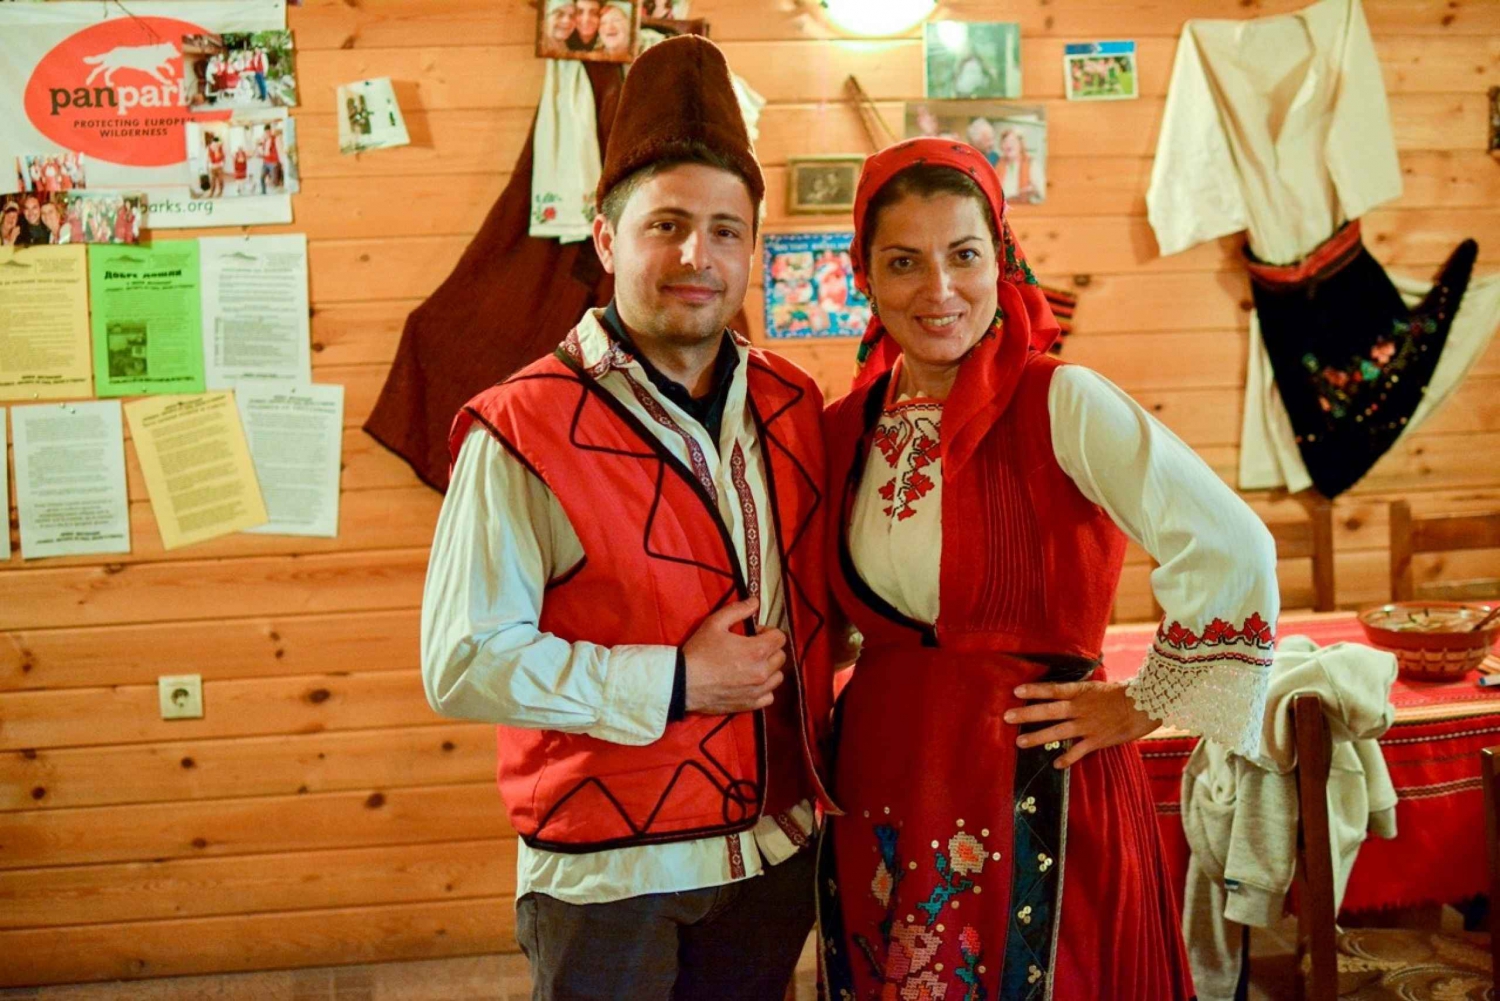 Gorno Draglishte: Lokal folkloreupplevelse med matprovning